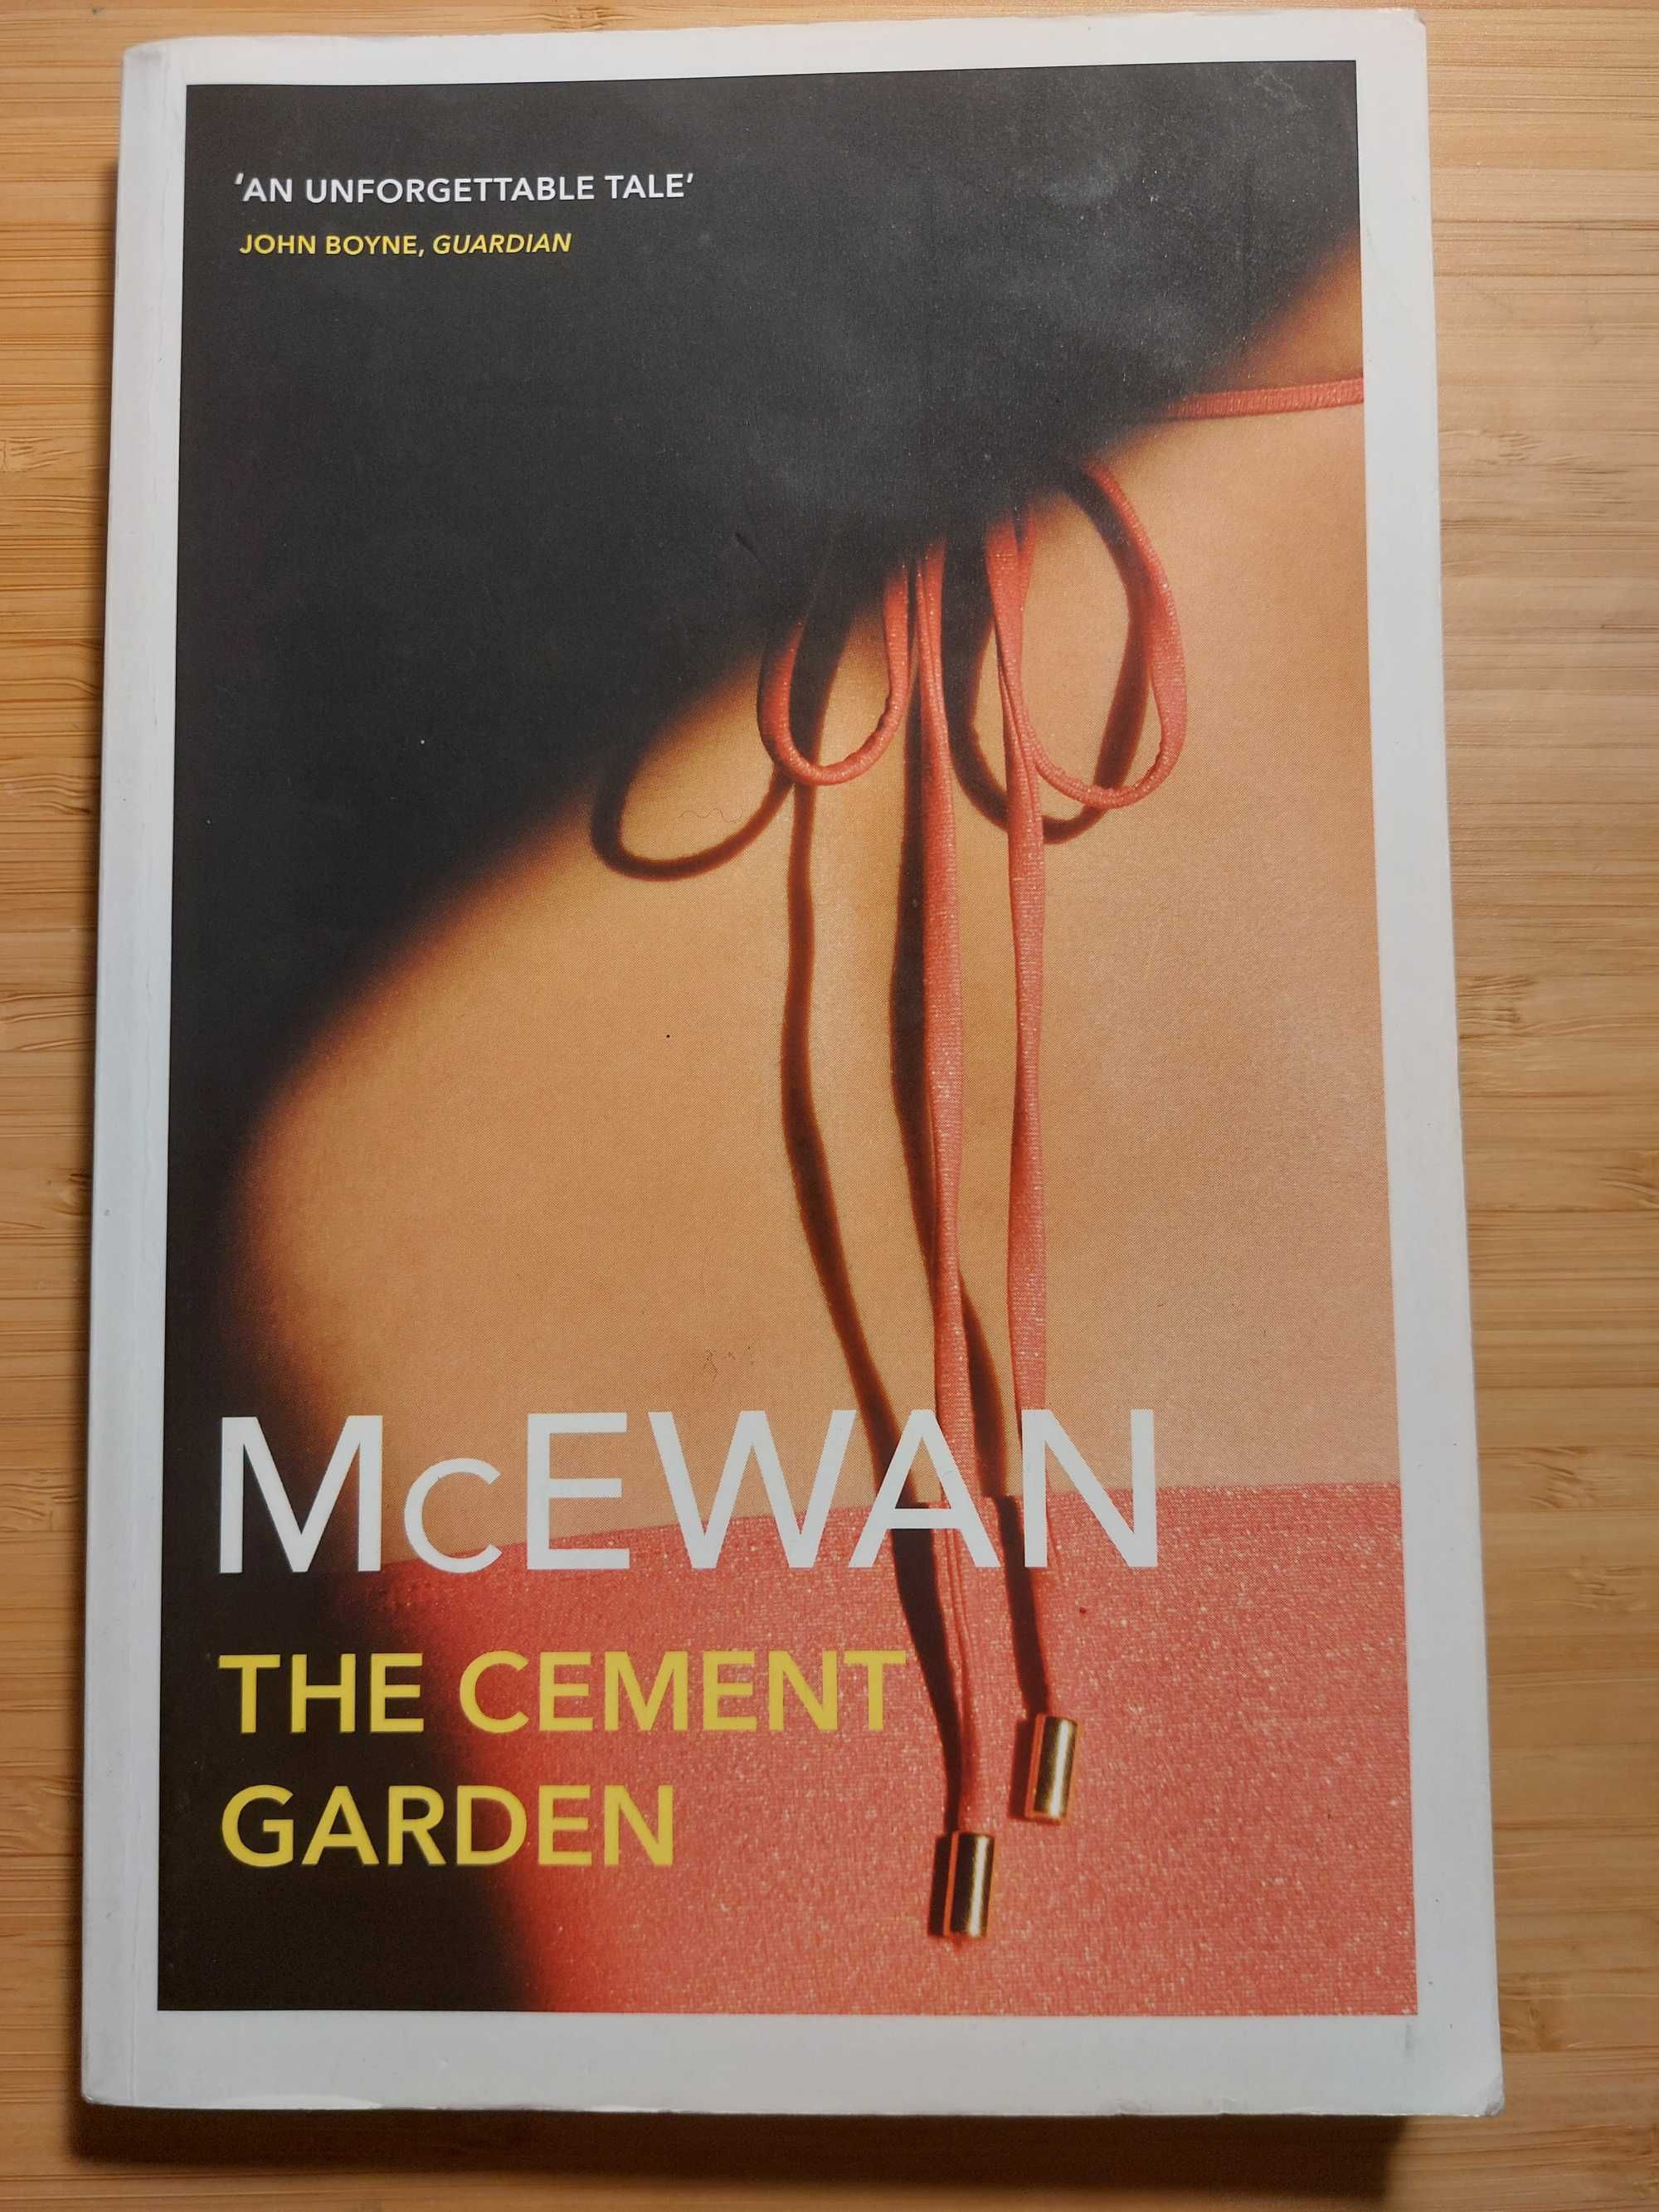 The Cement Garden, de Ian McEwan. Em inglês.